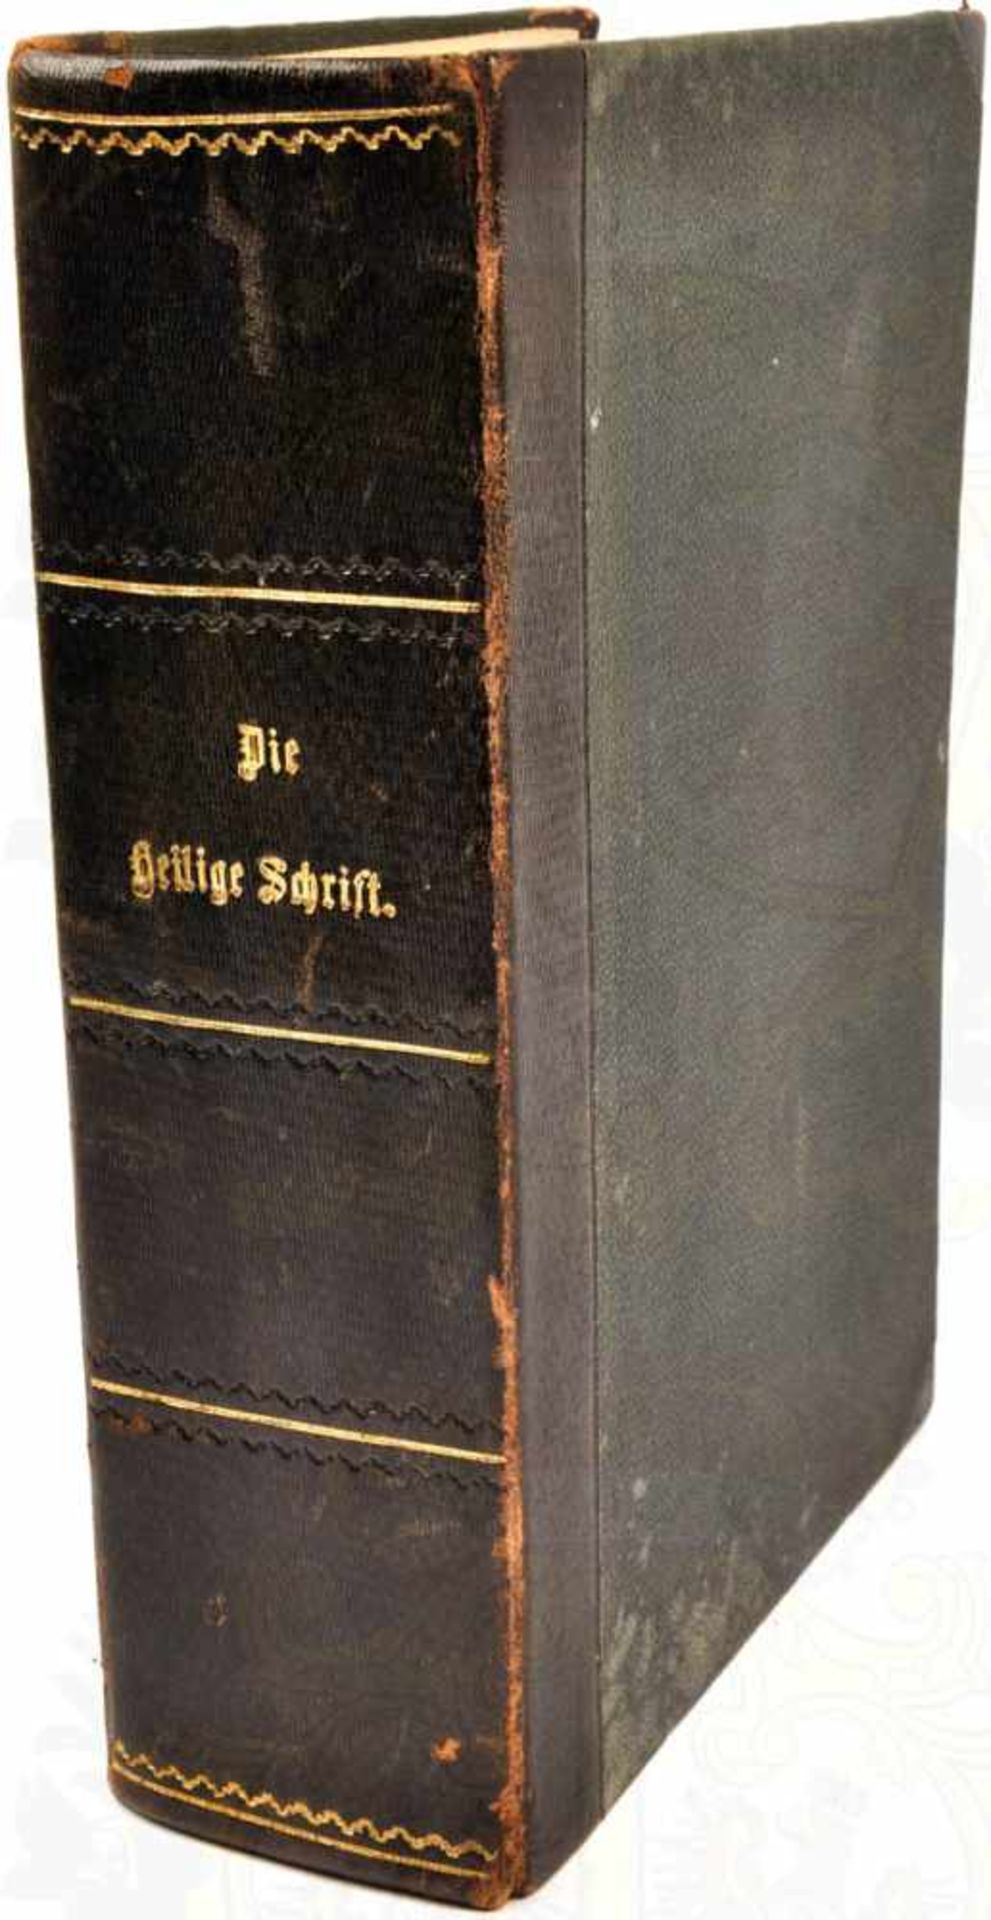 DIE HEILIGE SCHRIFT, Haus-Familienbibel, altes und neues Testament, nach Übersetzung D. Martin - Bild 2 aus 2